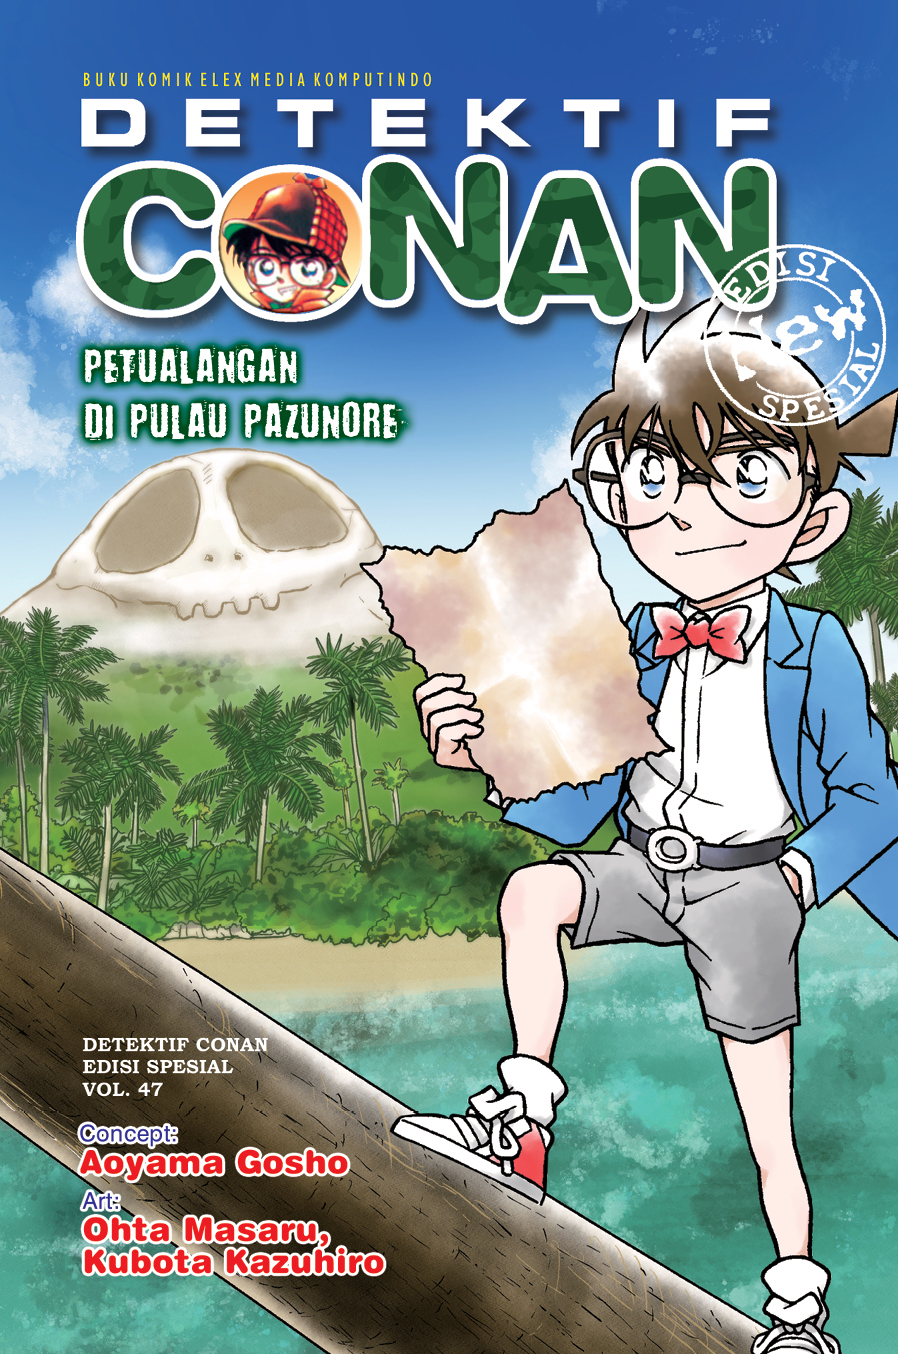 Detektif Conan spesial 47 :  petualangan di pulau Pazunore